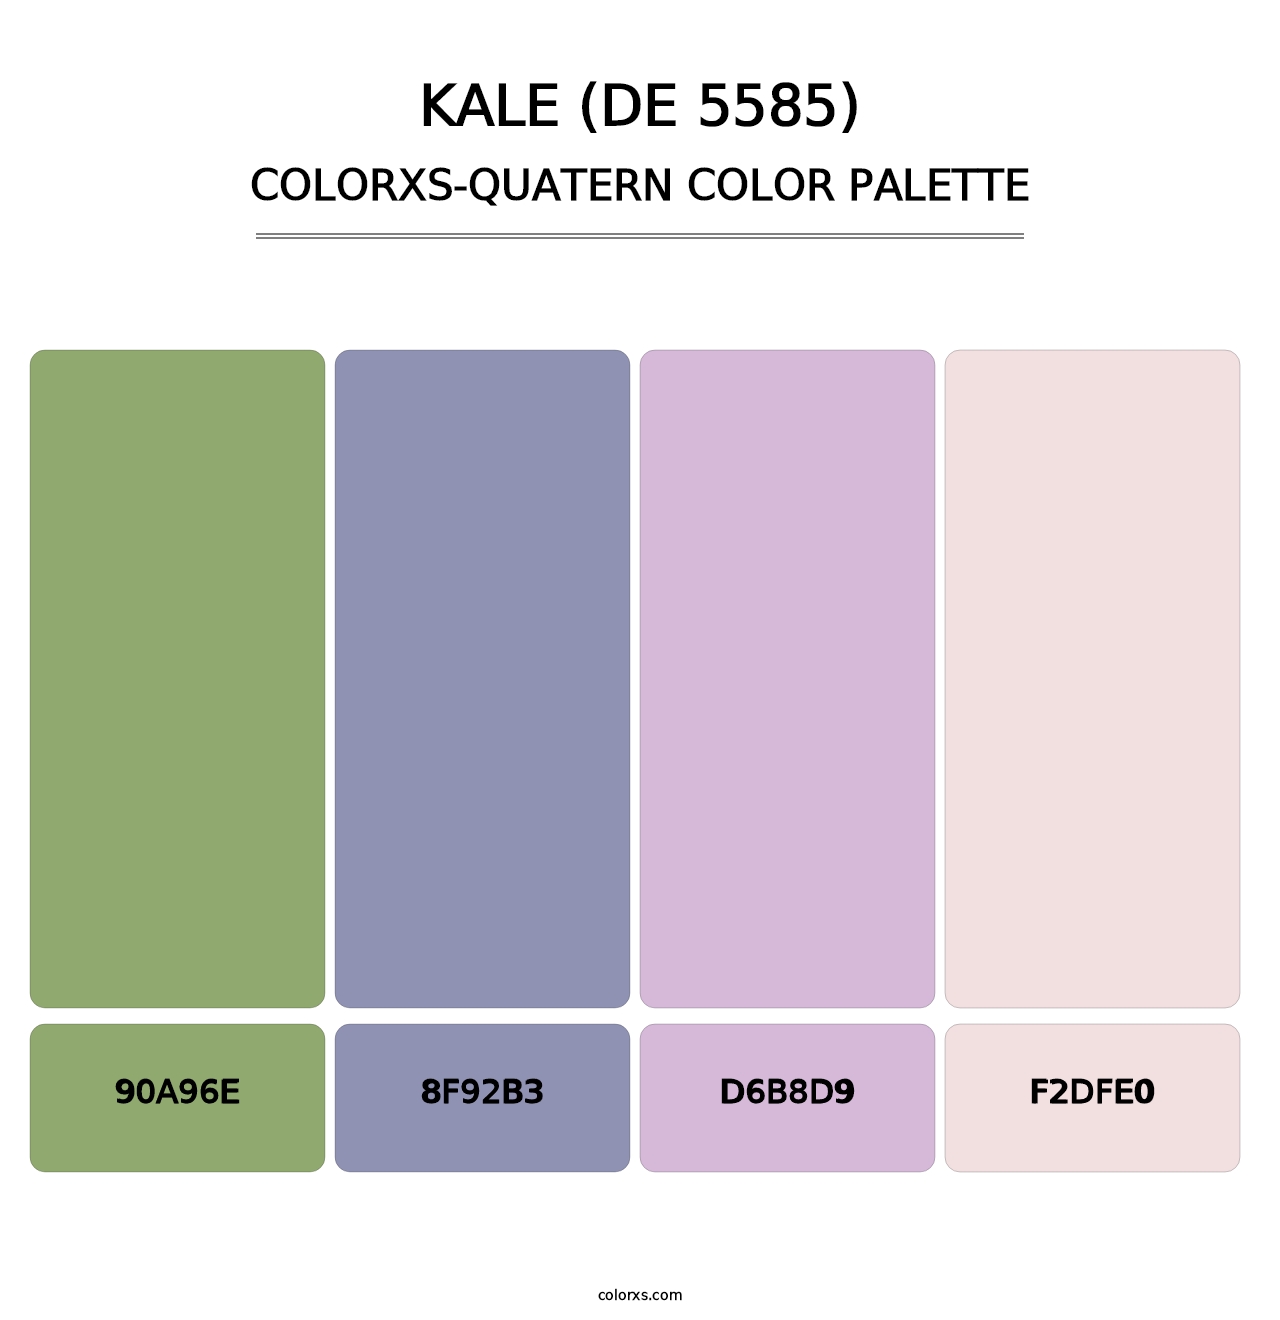 Kale (DE 5585) - Colorxs Quatern Palette